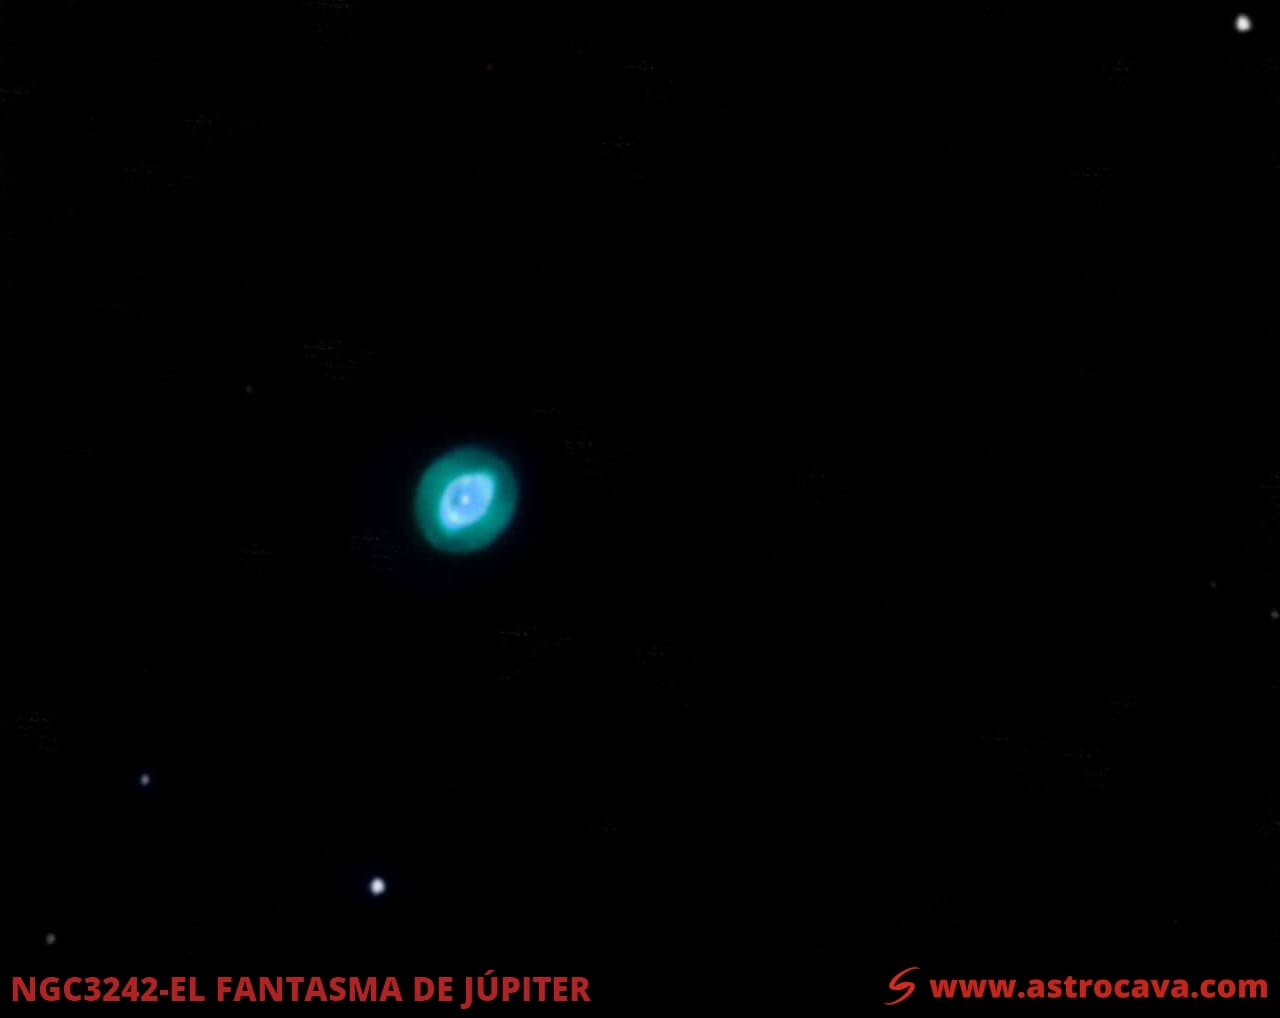 Pruebas de Lucky Imaging con el Fantasma de Júpiter - NGC3242. Versión en color.